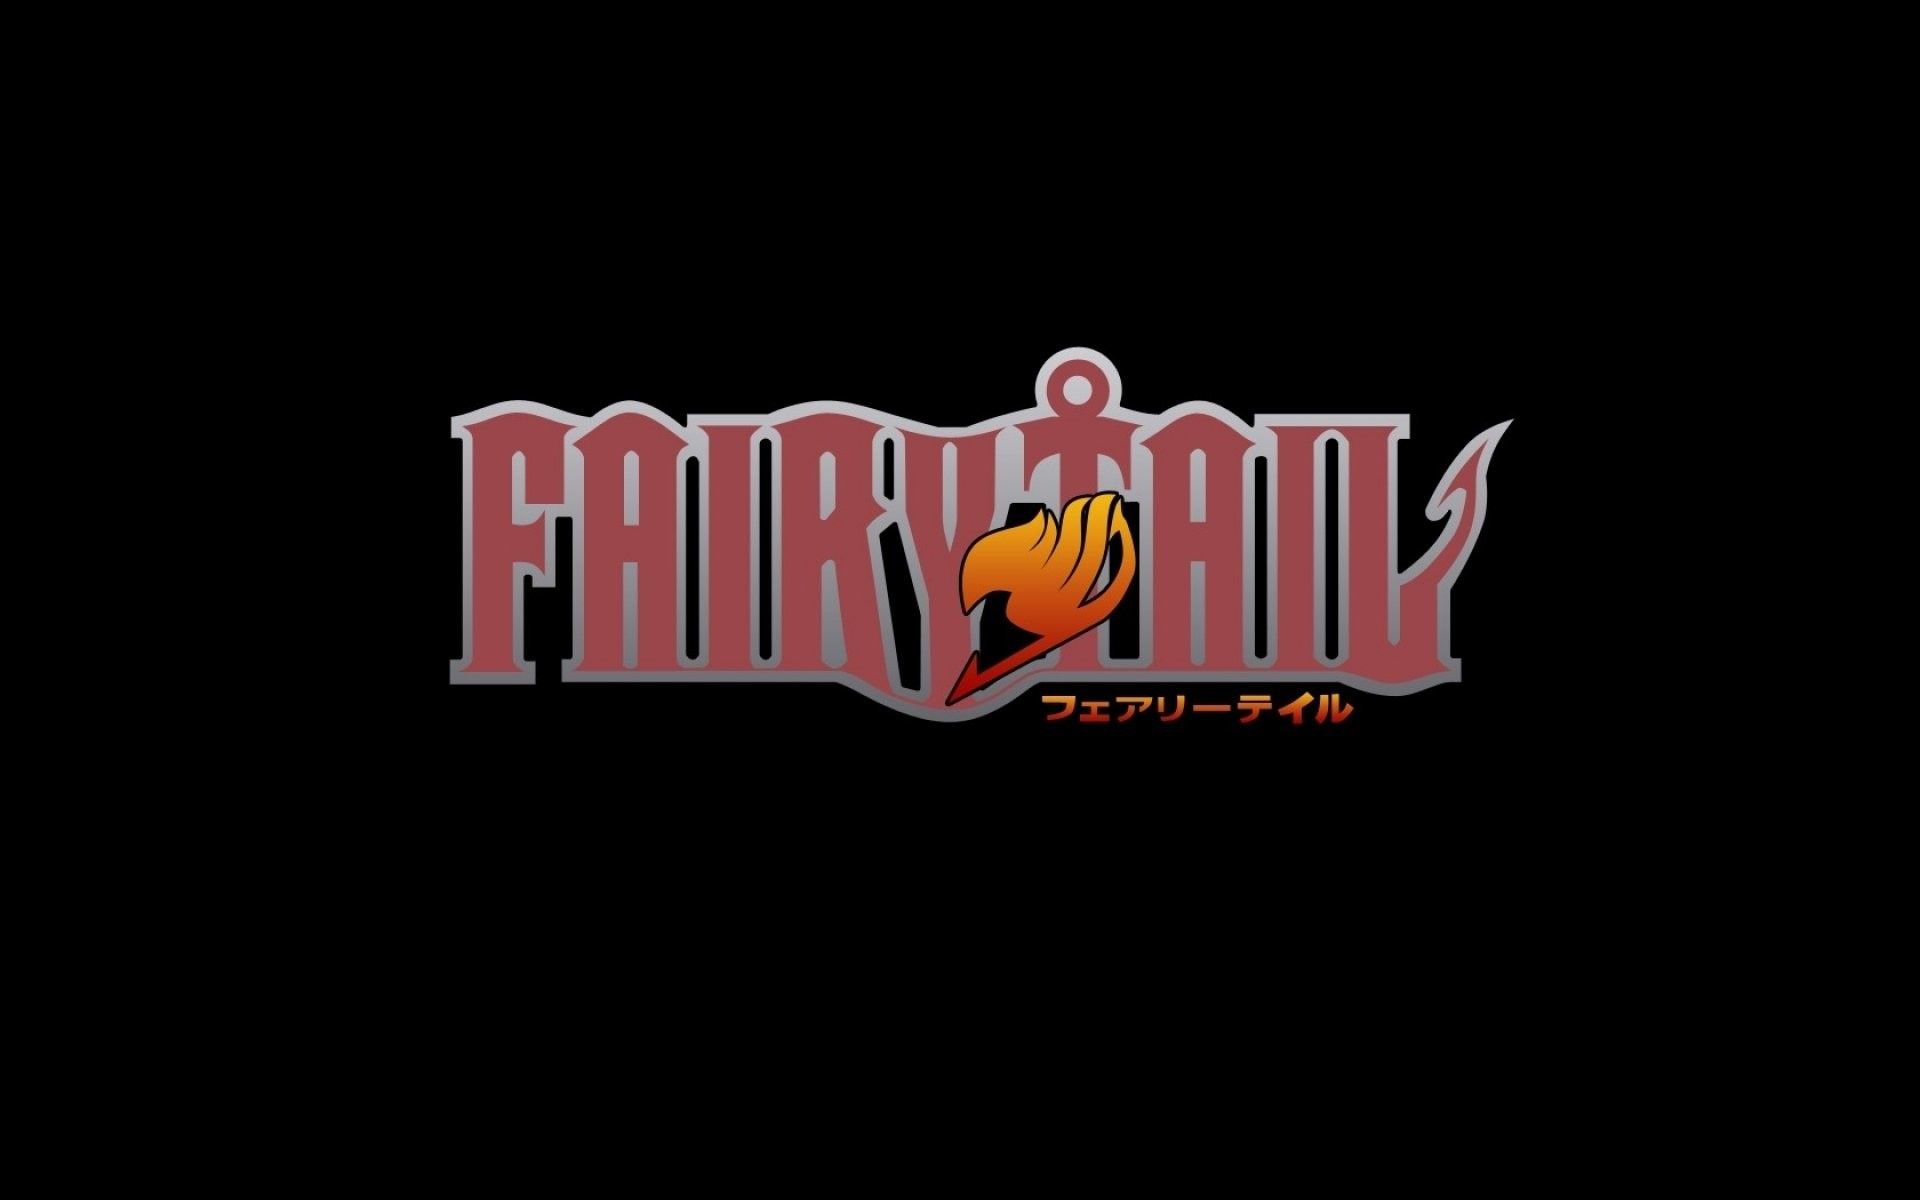 Fairy tail symbol, Fairy tail, Fairy tail emblem